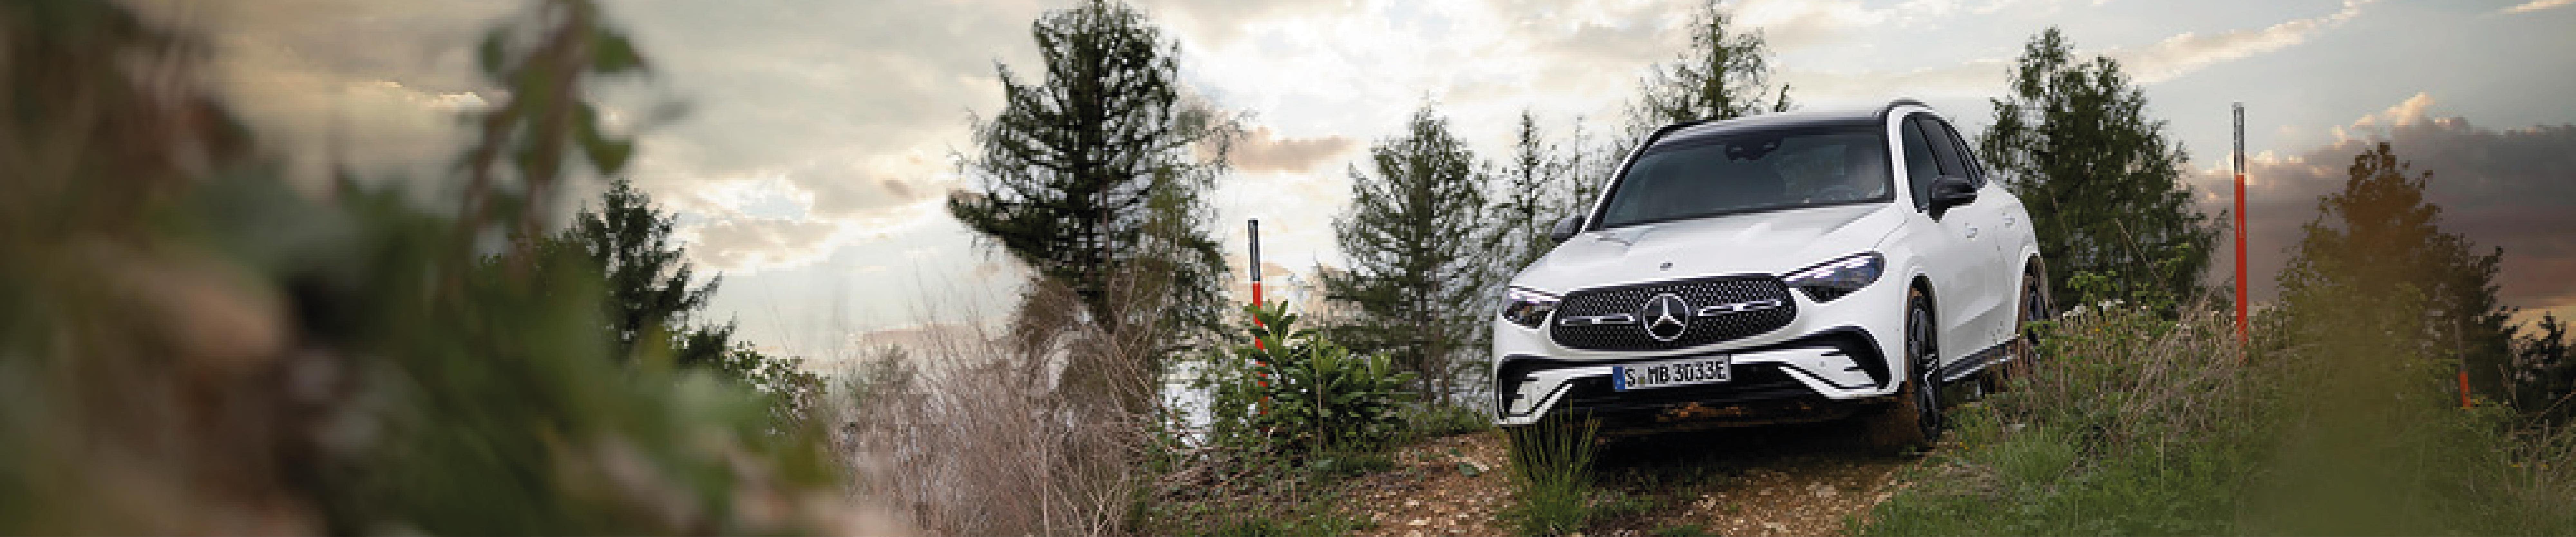 Mercedes-Benz GLC: Linhas claras e proporções dinâmicas